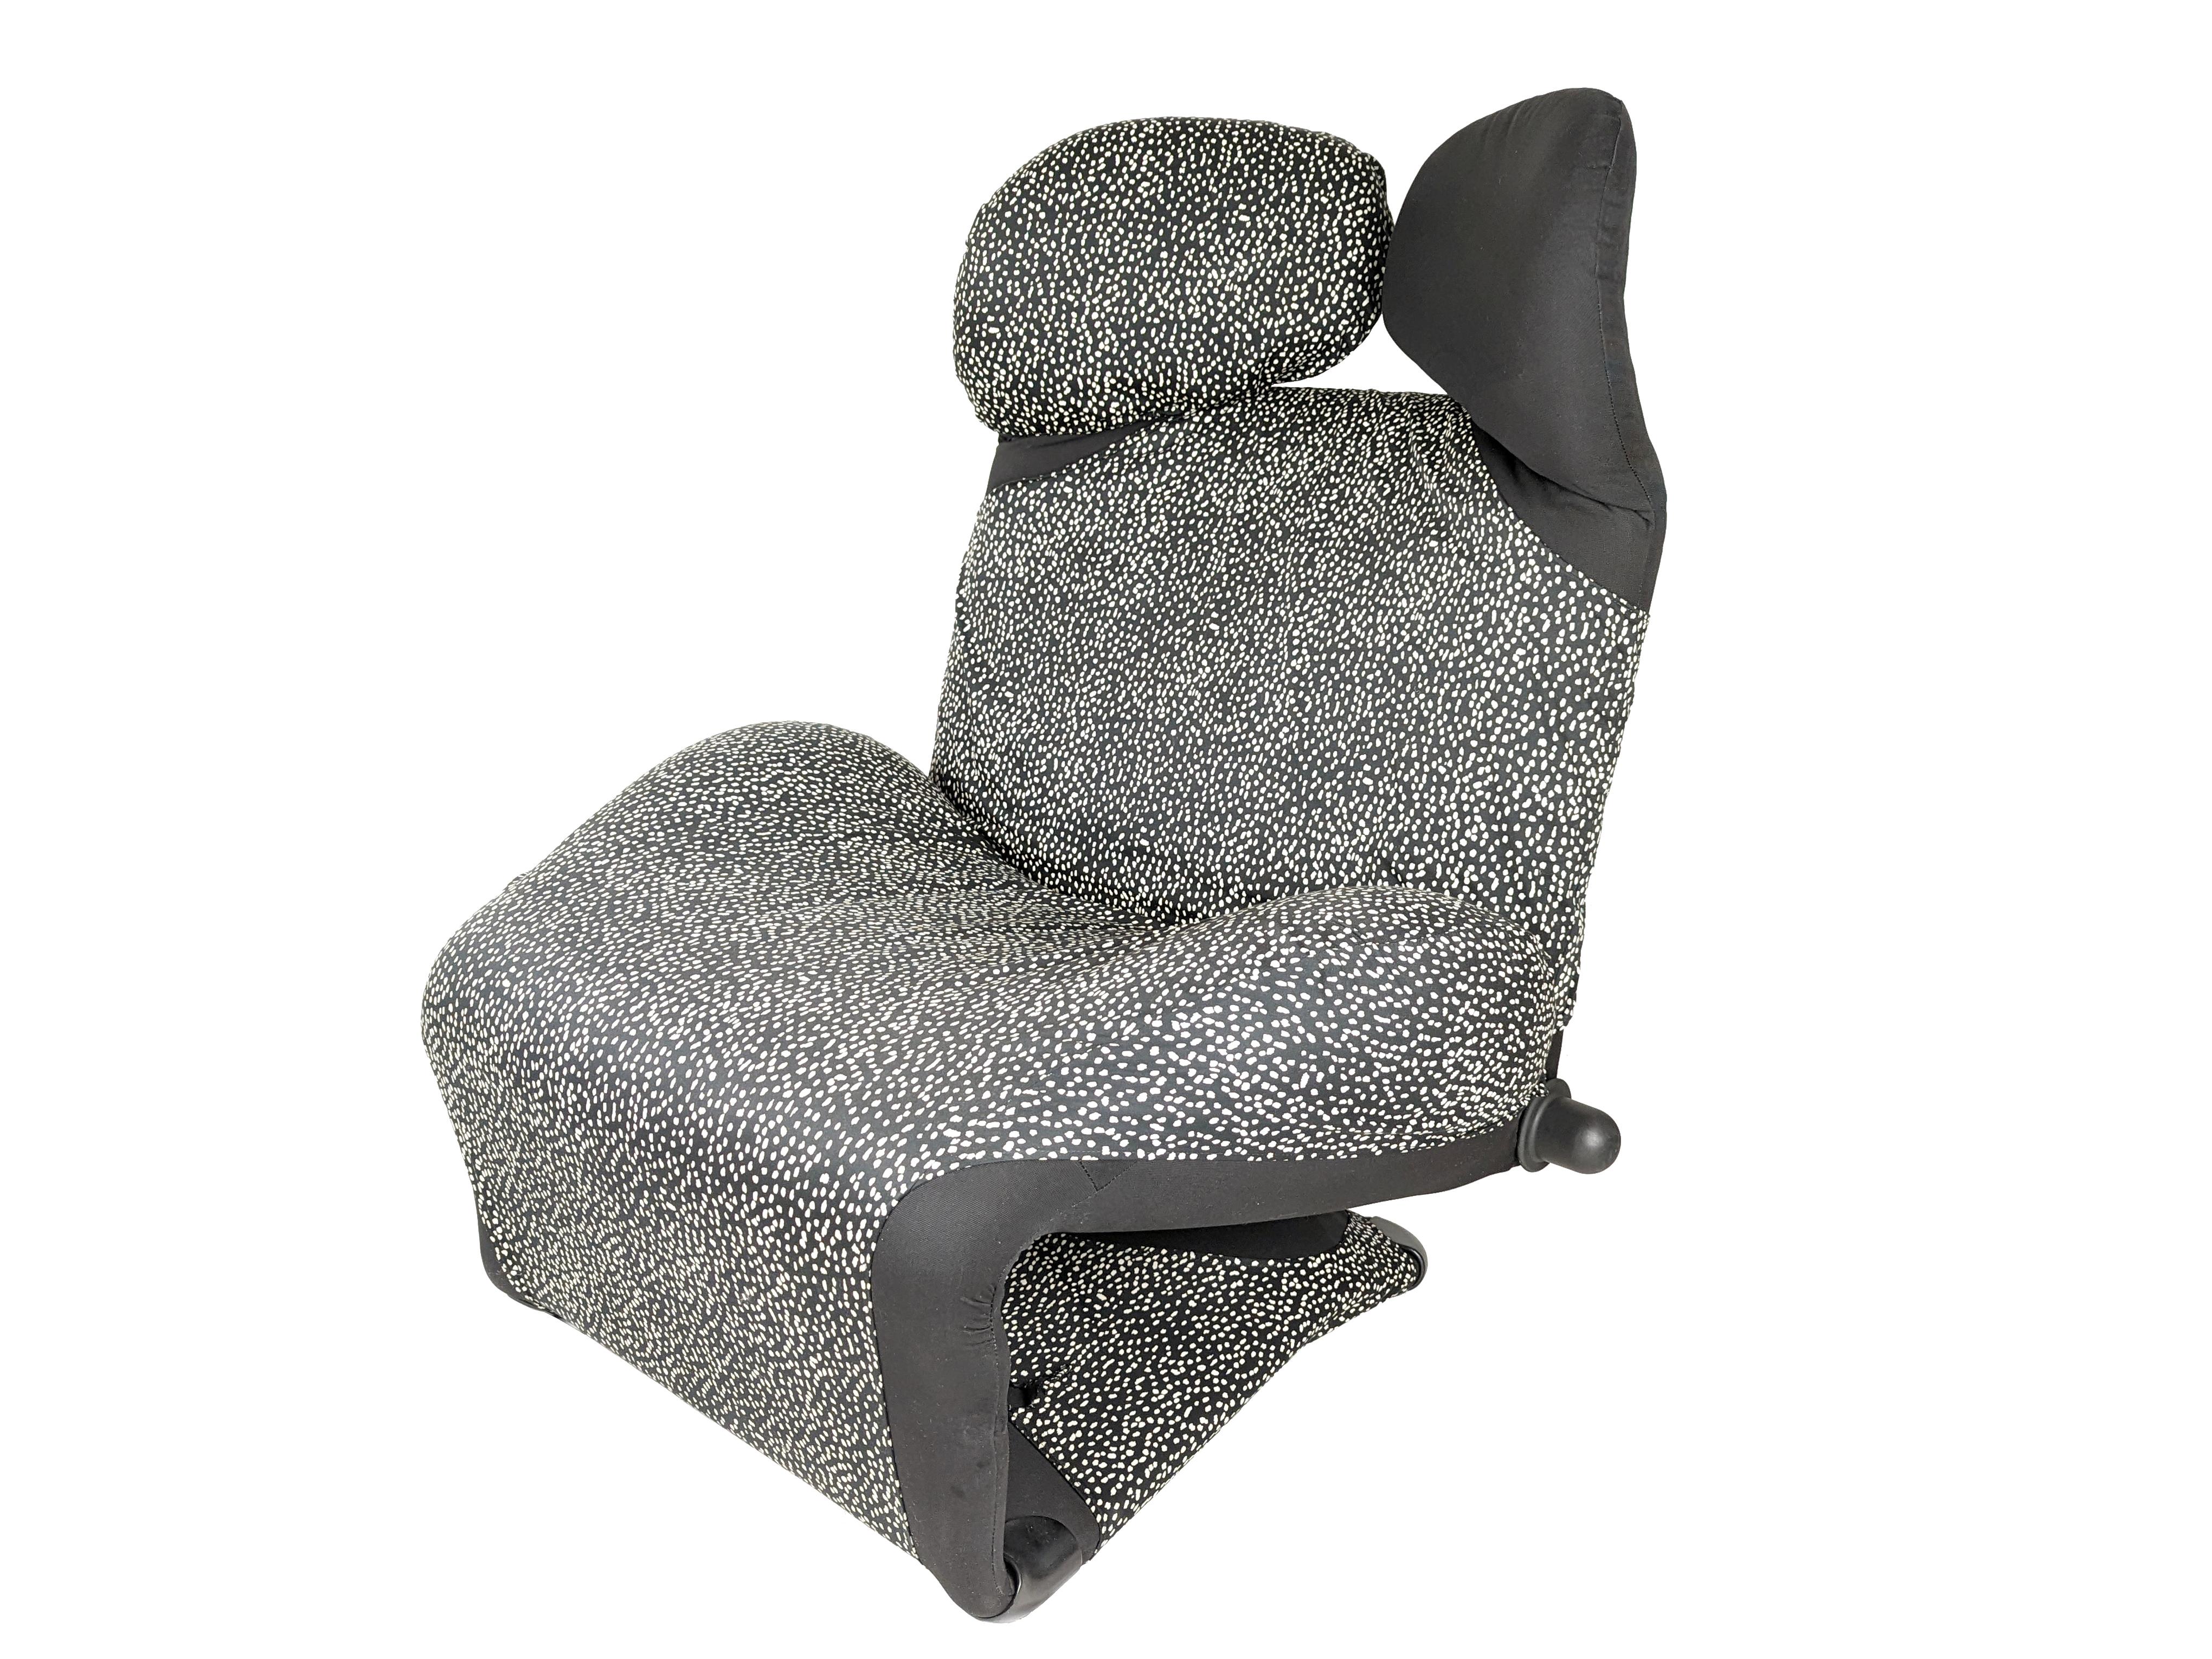 Cette chaise longue polyvalente est composée d'un cadre en acier, de padding et de mousse. Il est doté de deux boutons latéraux permettant de régler le dossier ; l'appui-tête est divisé en deux parties, chacune ayant une position d'inclinaison